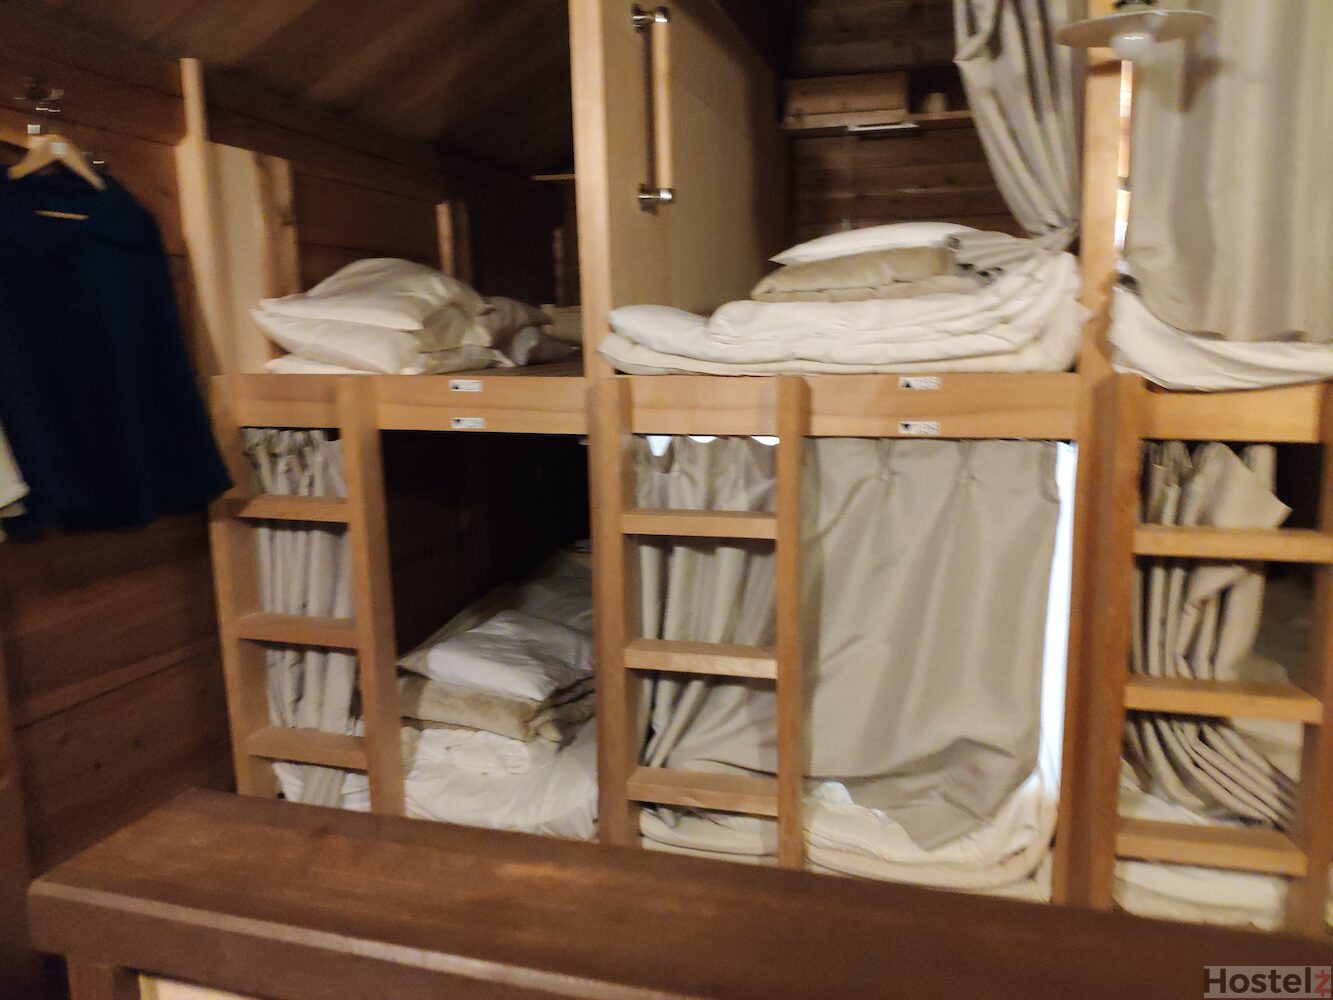 dorm bunk/cubicle beds